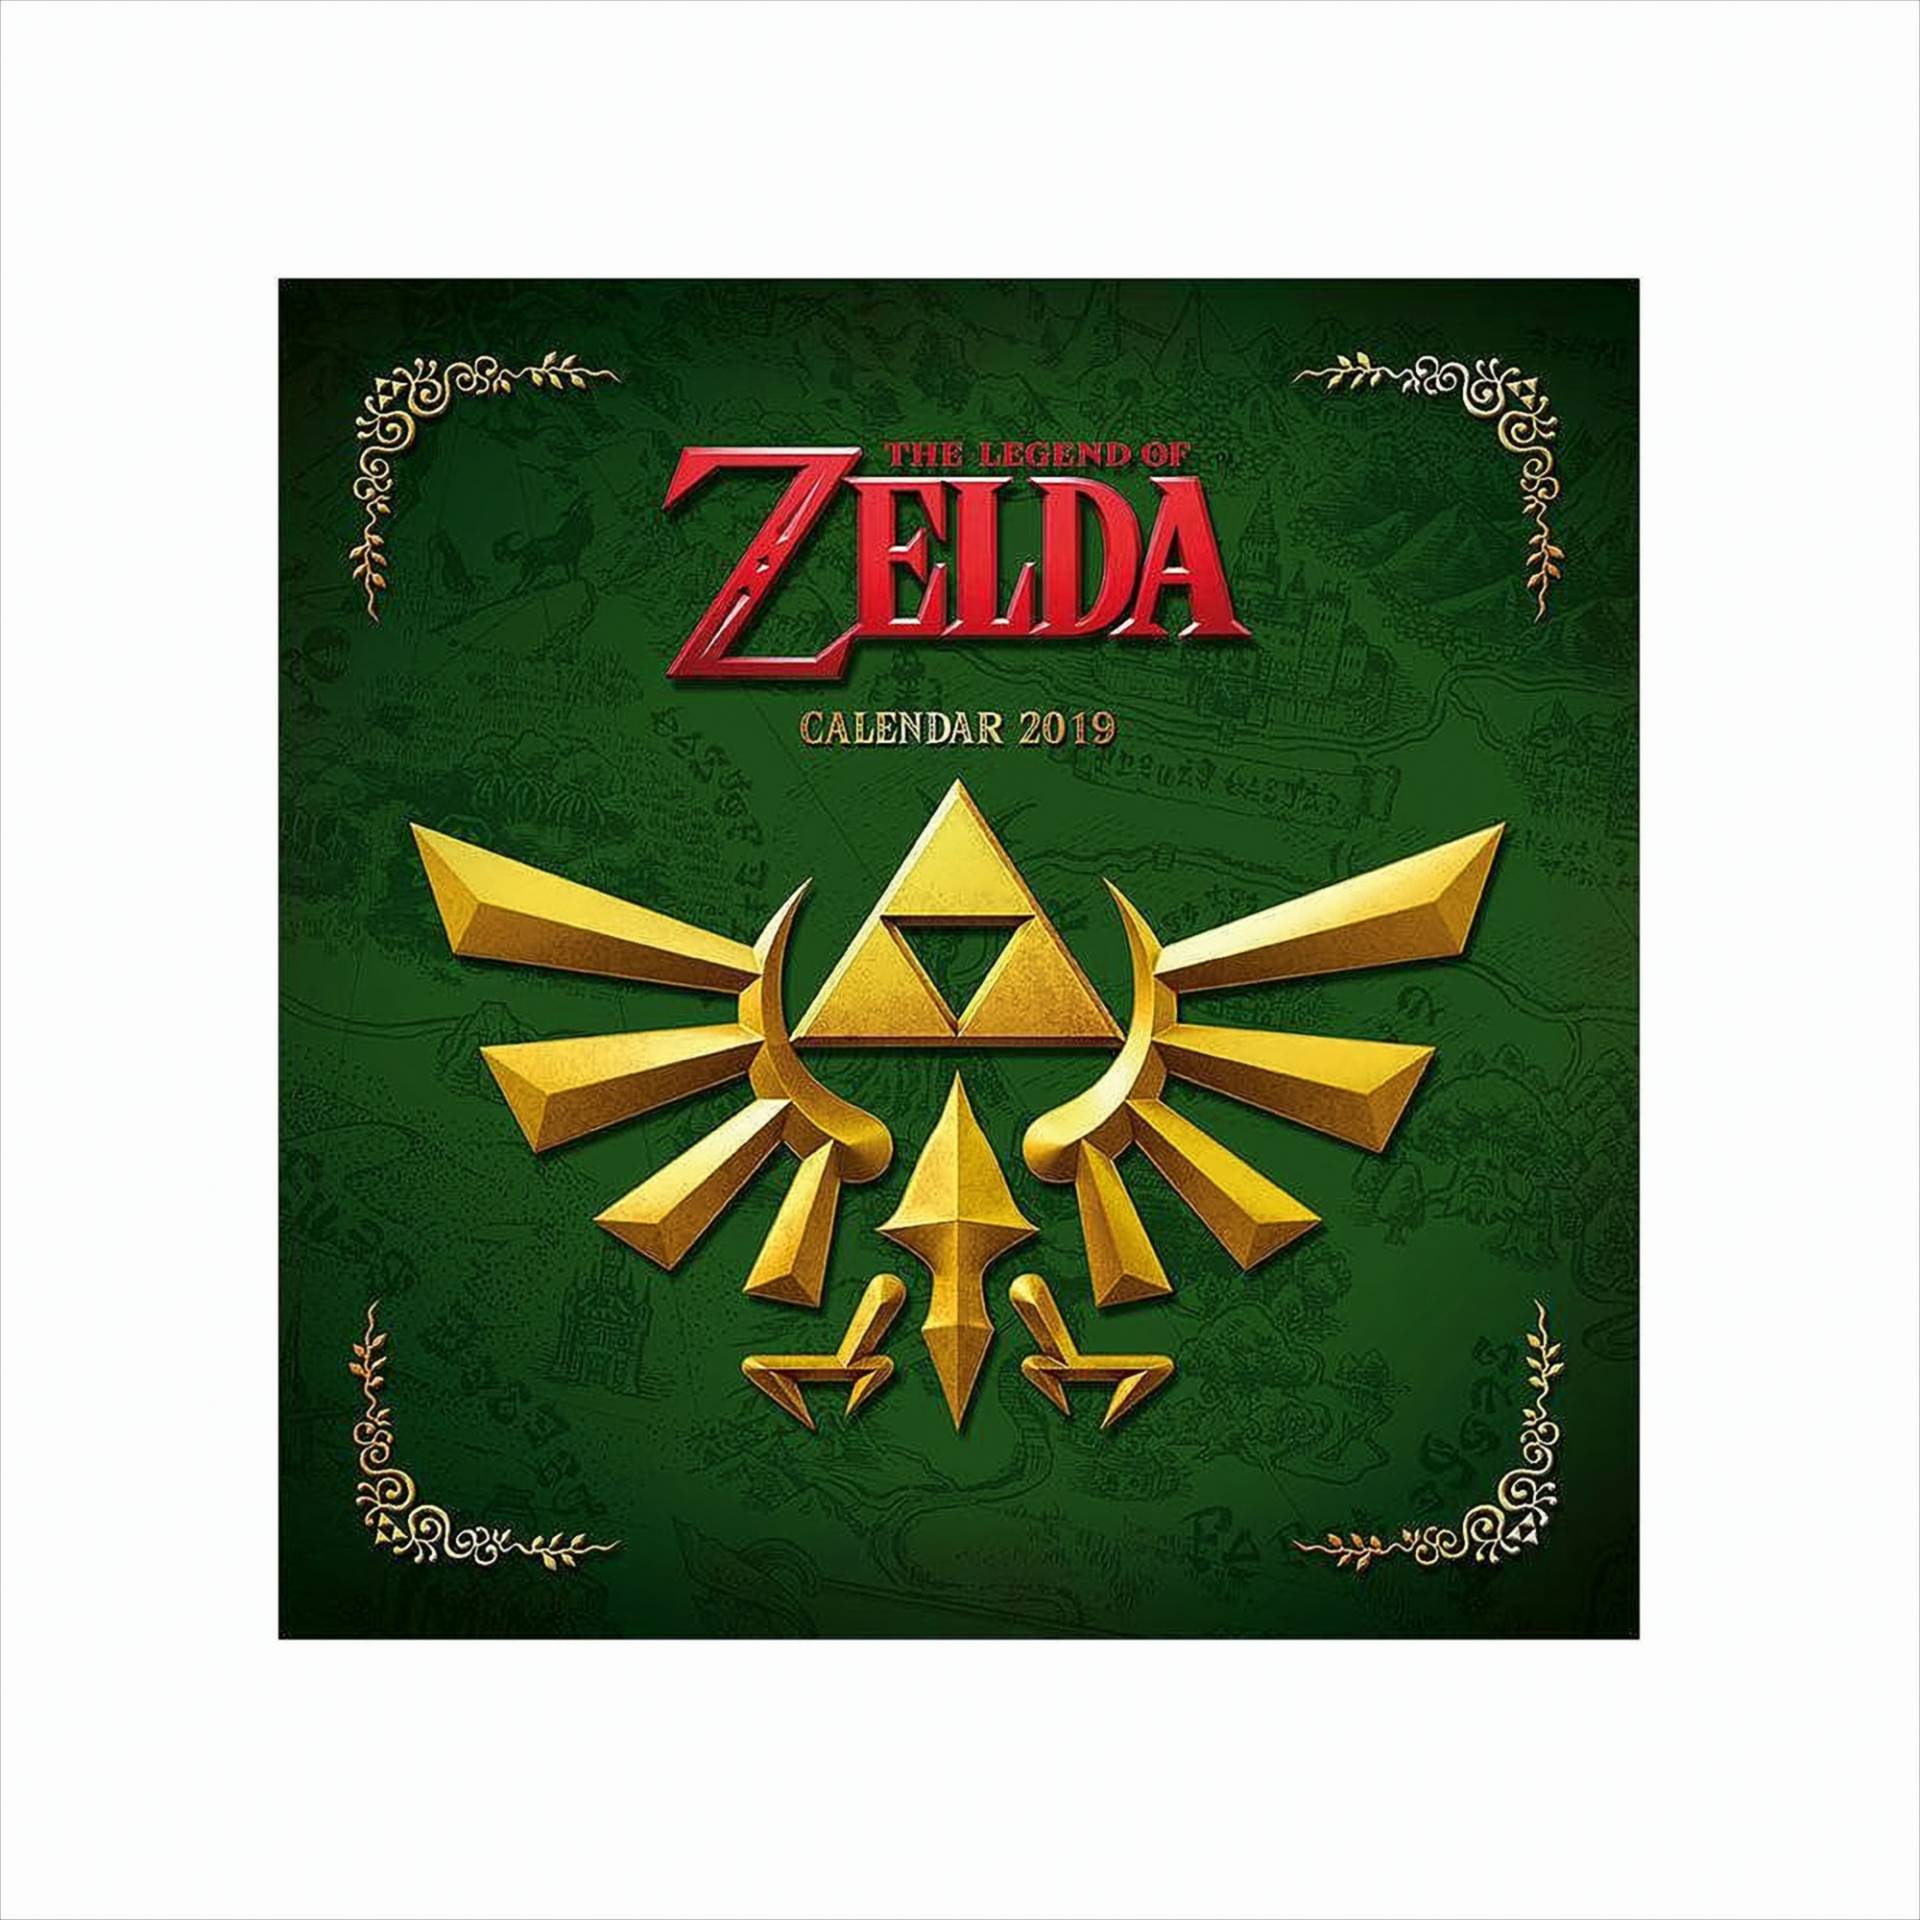 Legend of Zelda Kalender 2019 von Pyramid International